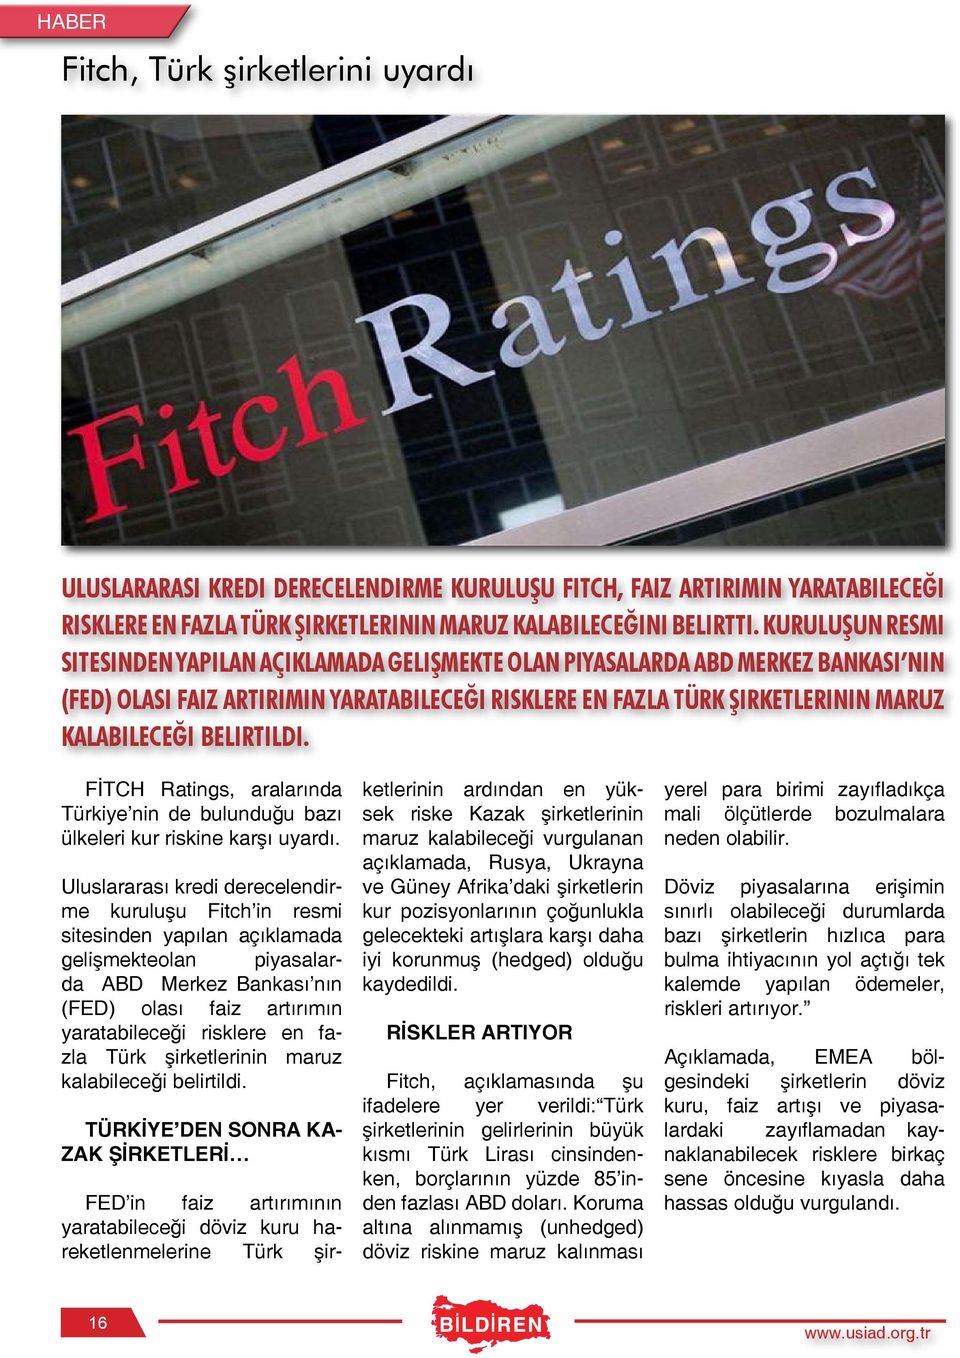 belirtildi. FİTCH Ratings, araların da Türkiye nin de bulun duğu bazı ülkeleri kur riskine karşı uyardı.